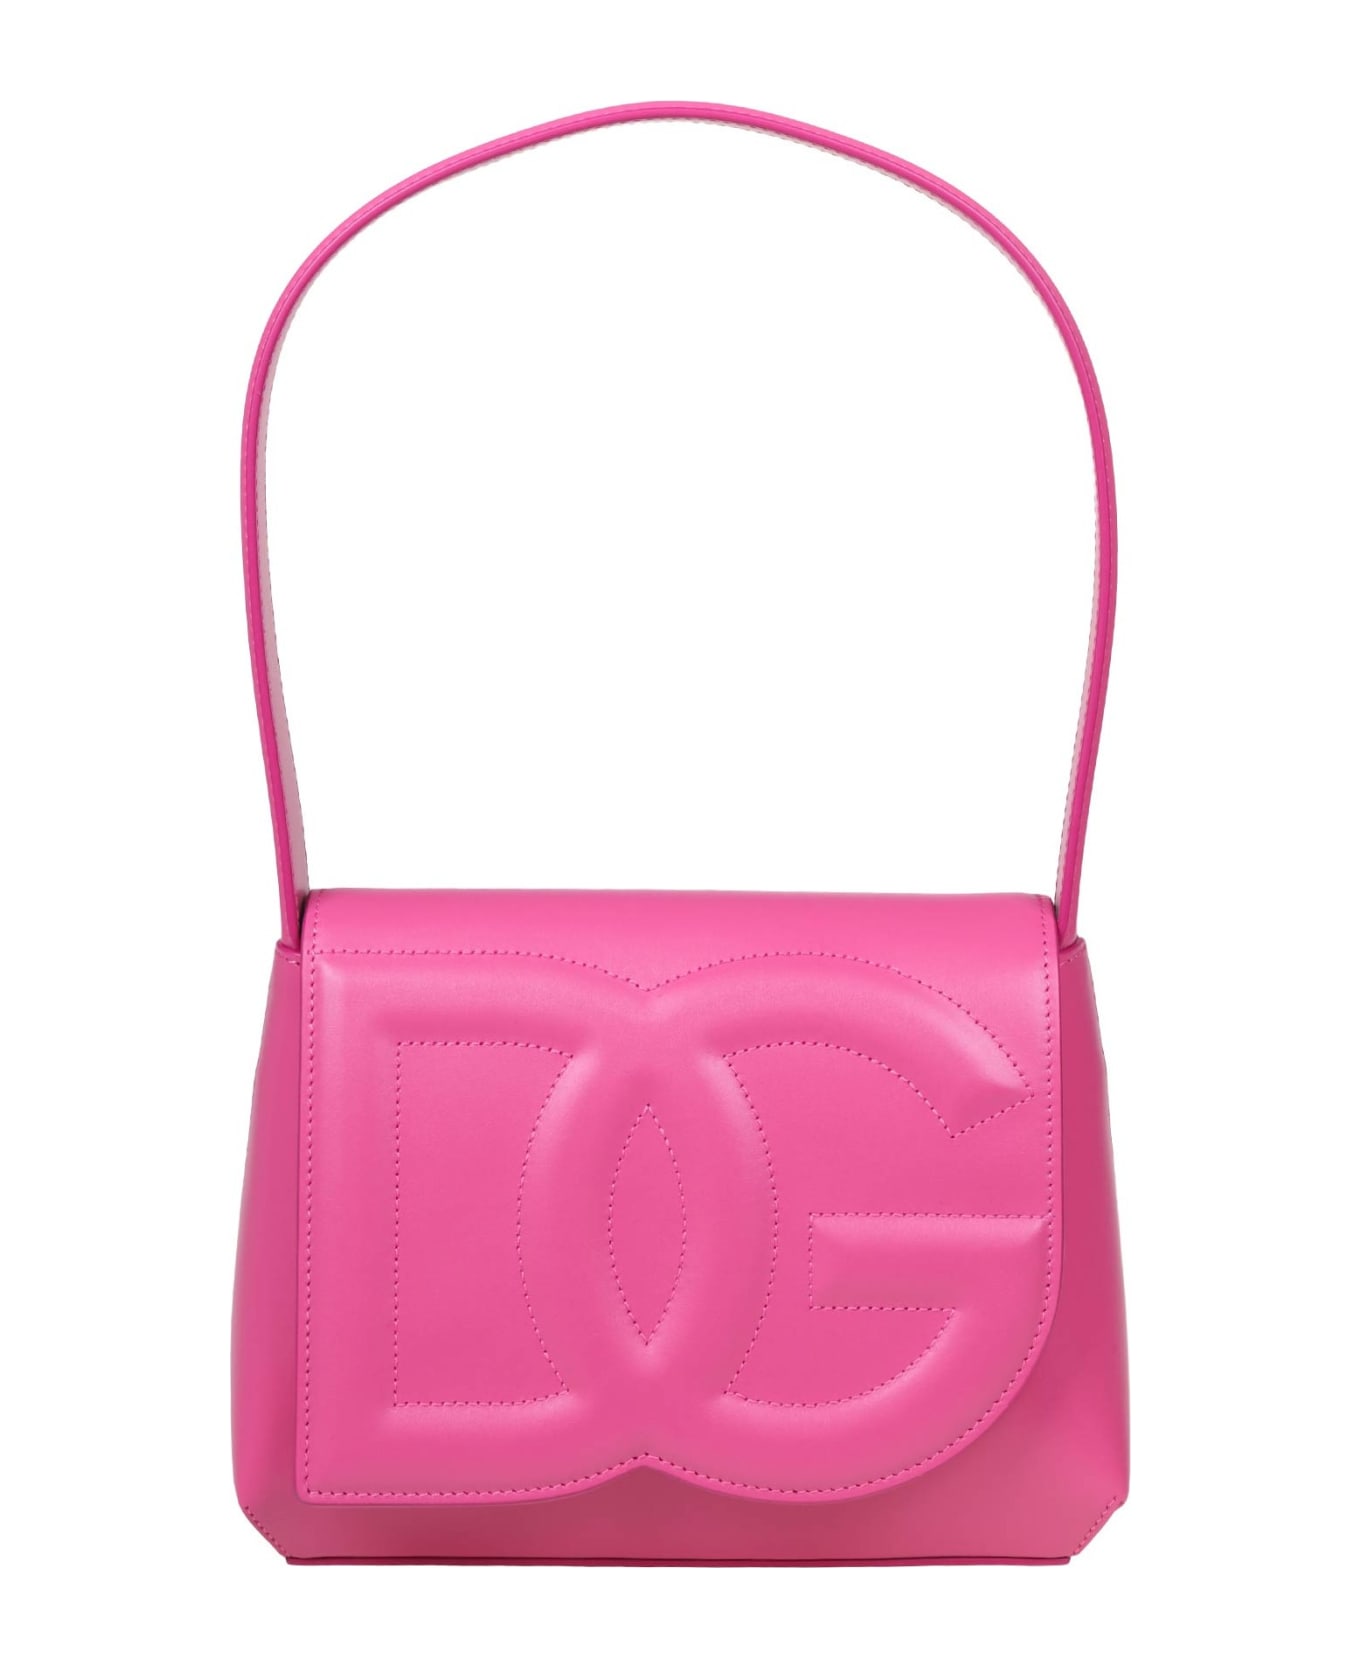 Dolce & Gabbana Leather Shoulder Bag With Dg Logo - Lilac